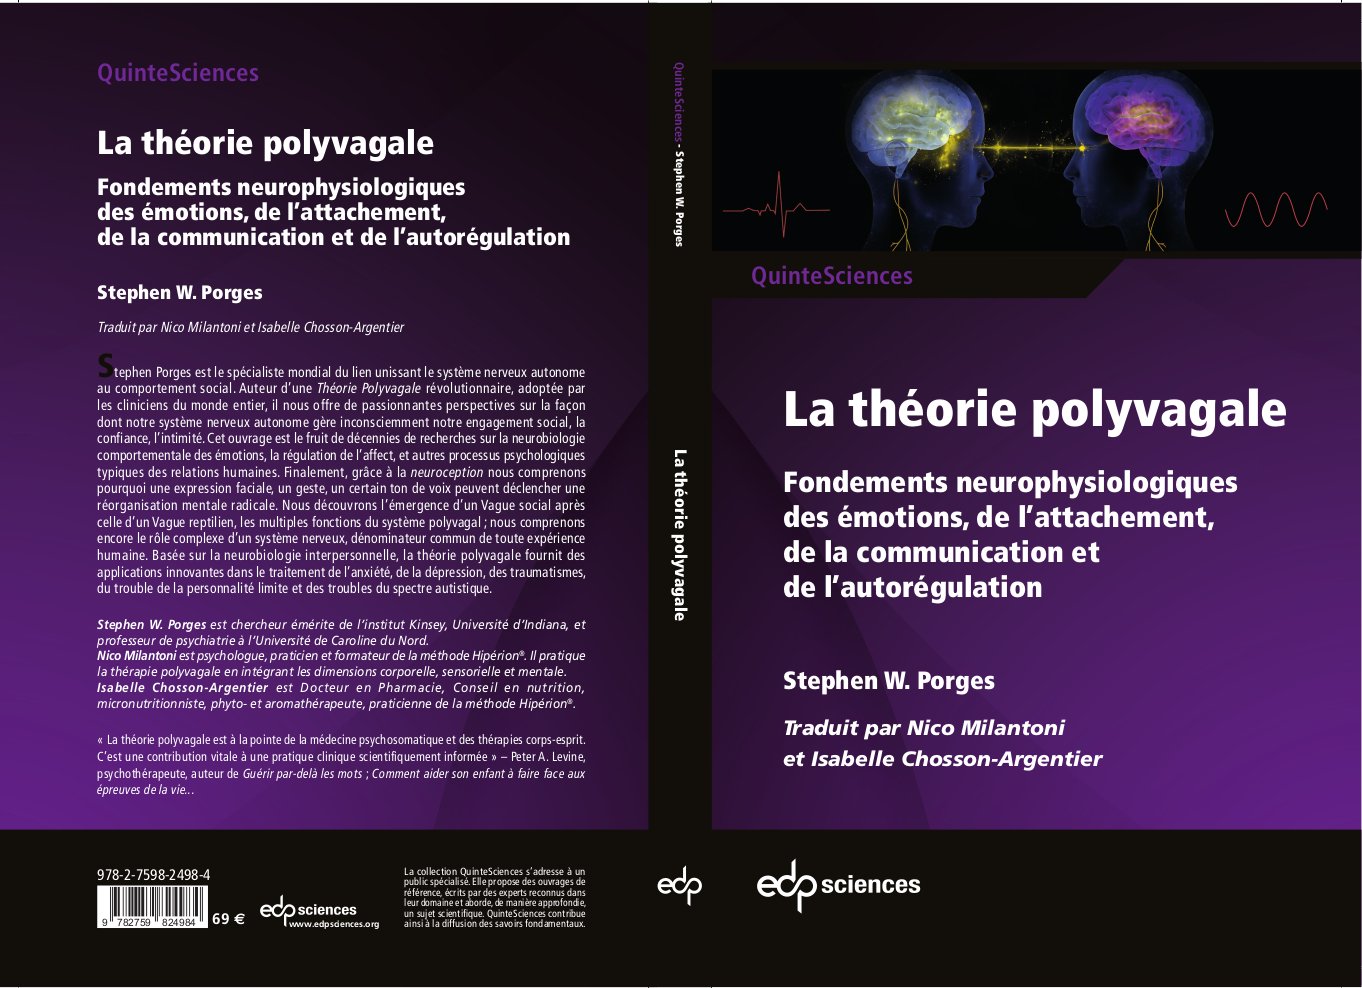 couverture du livre Theorie polyvagale de STEPHEN PORGES et publié par EDPSCIENCES